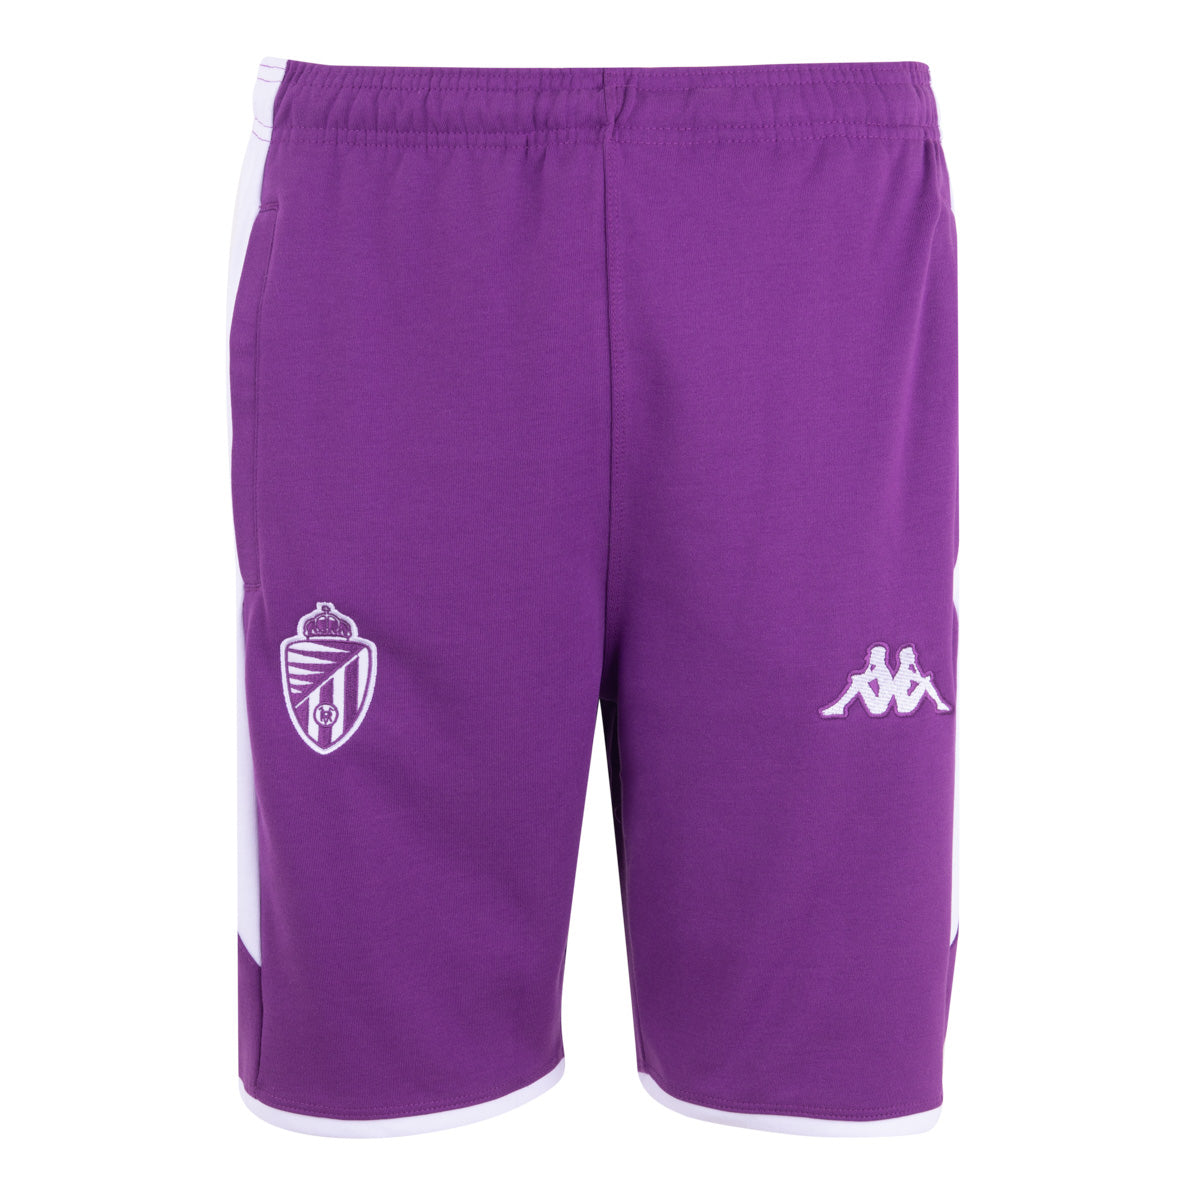 Pantalones cortos Alozip 7 Real Valladolid Violeta Hombre